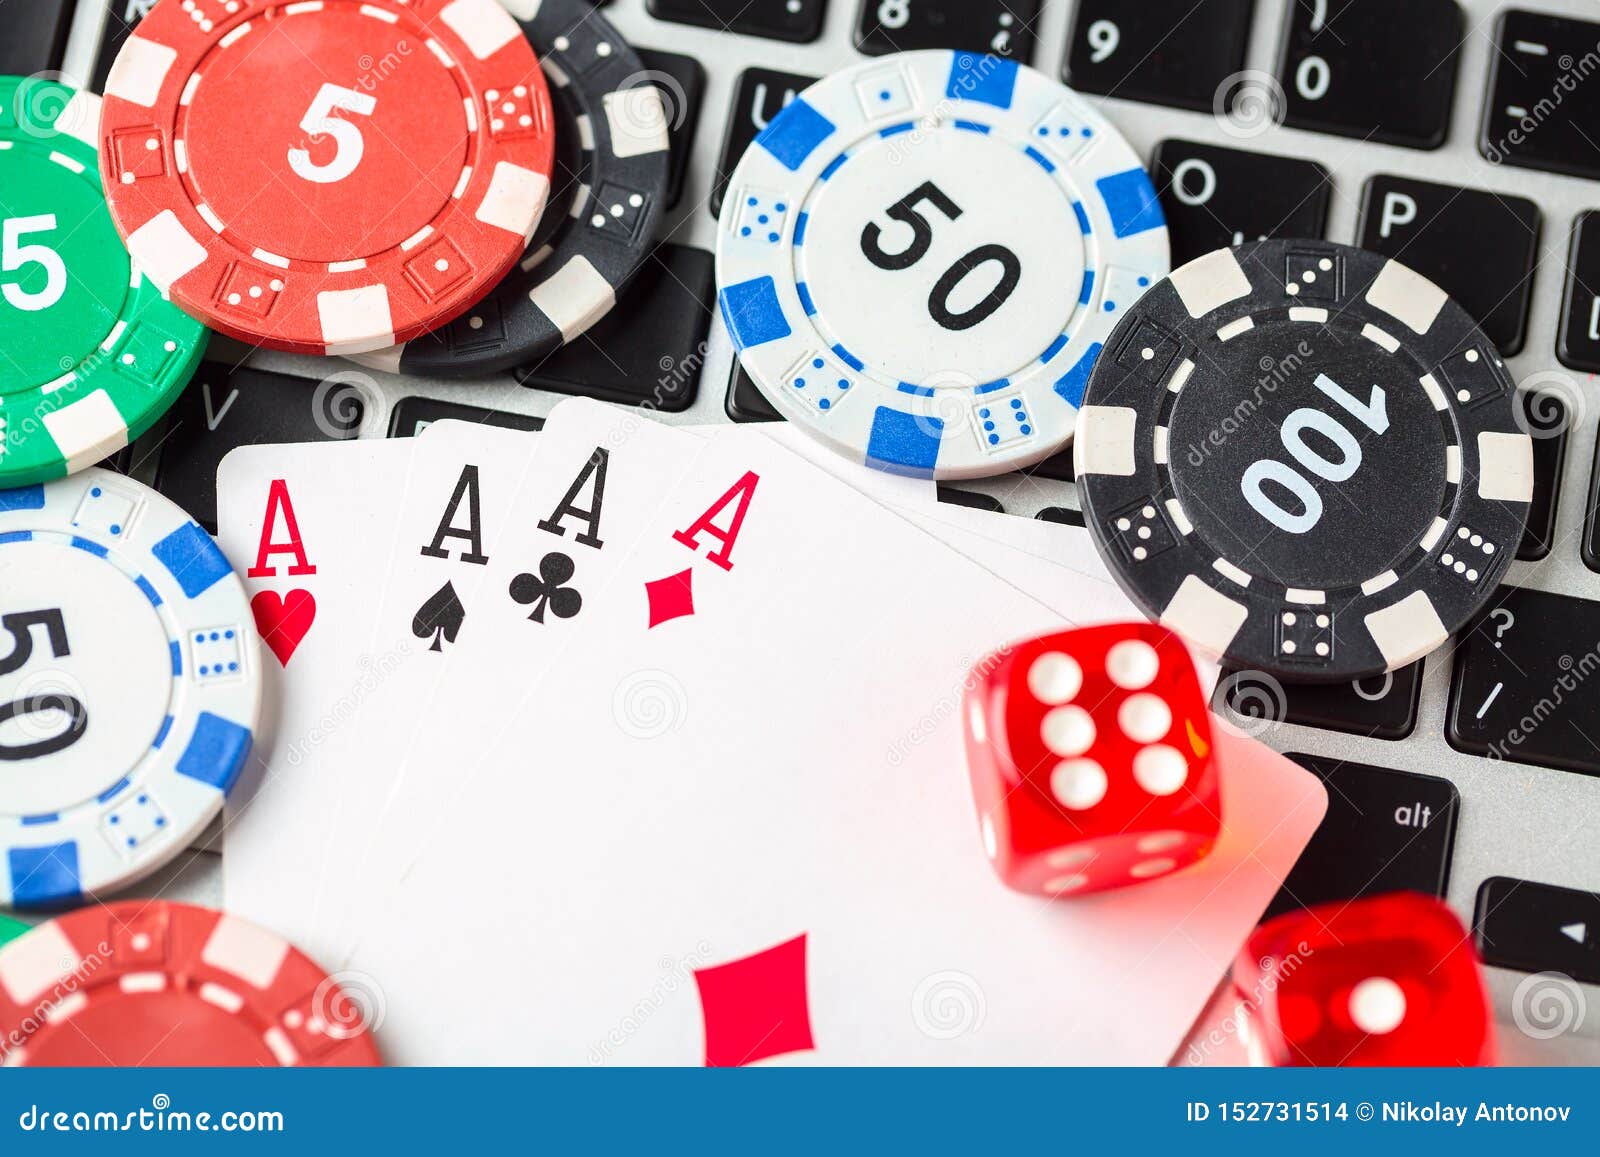 Apostar en póker online: apuestas más comunes y tipos de jugadas